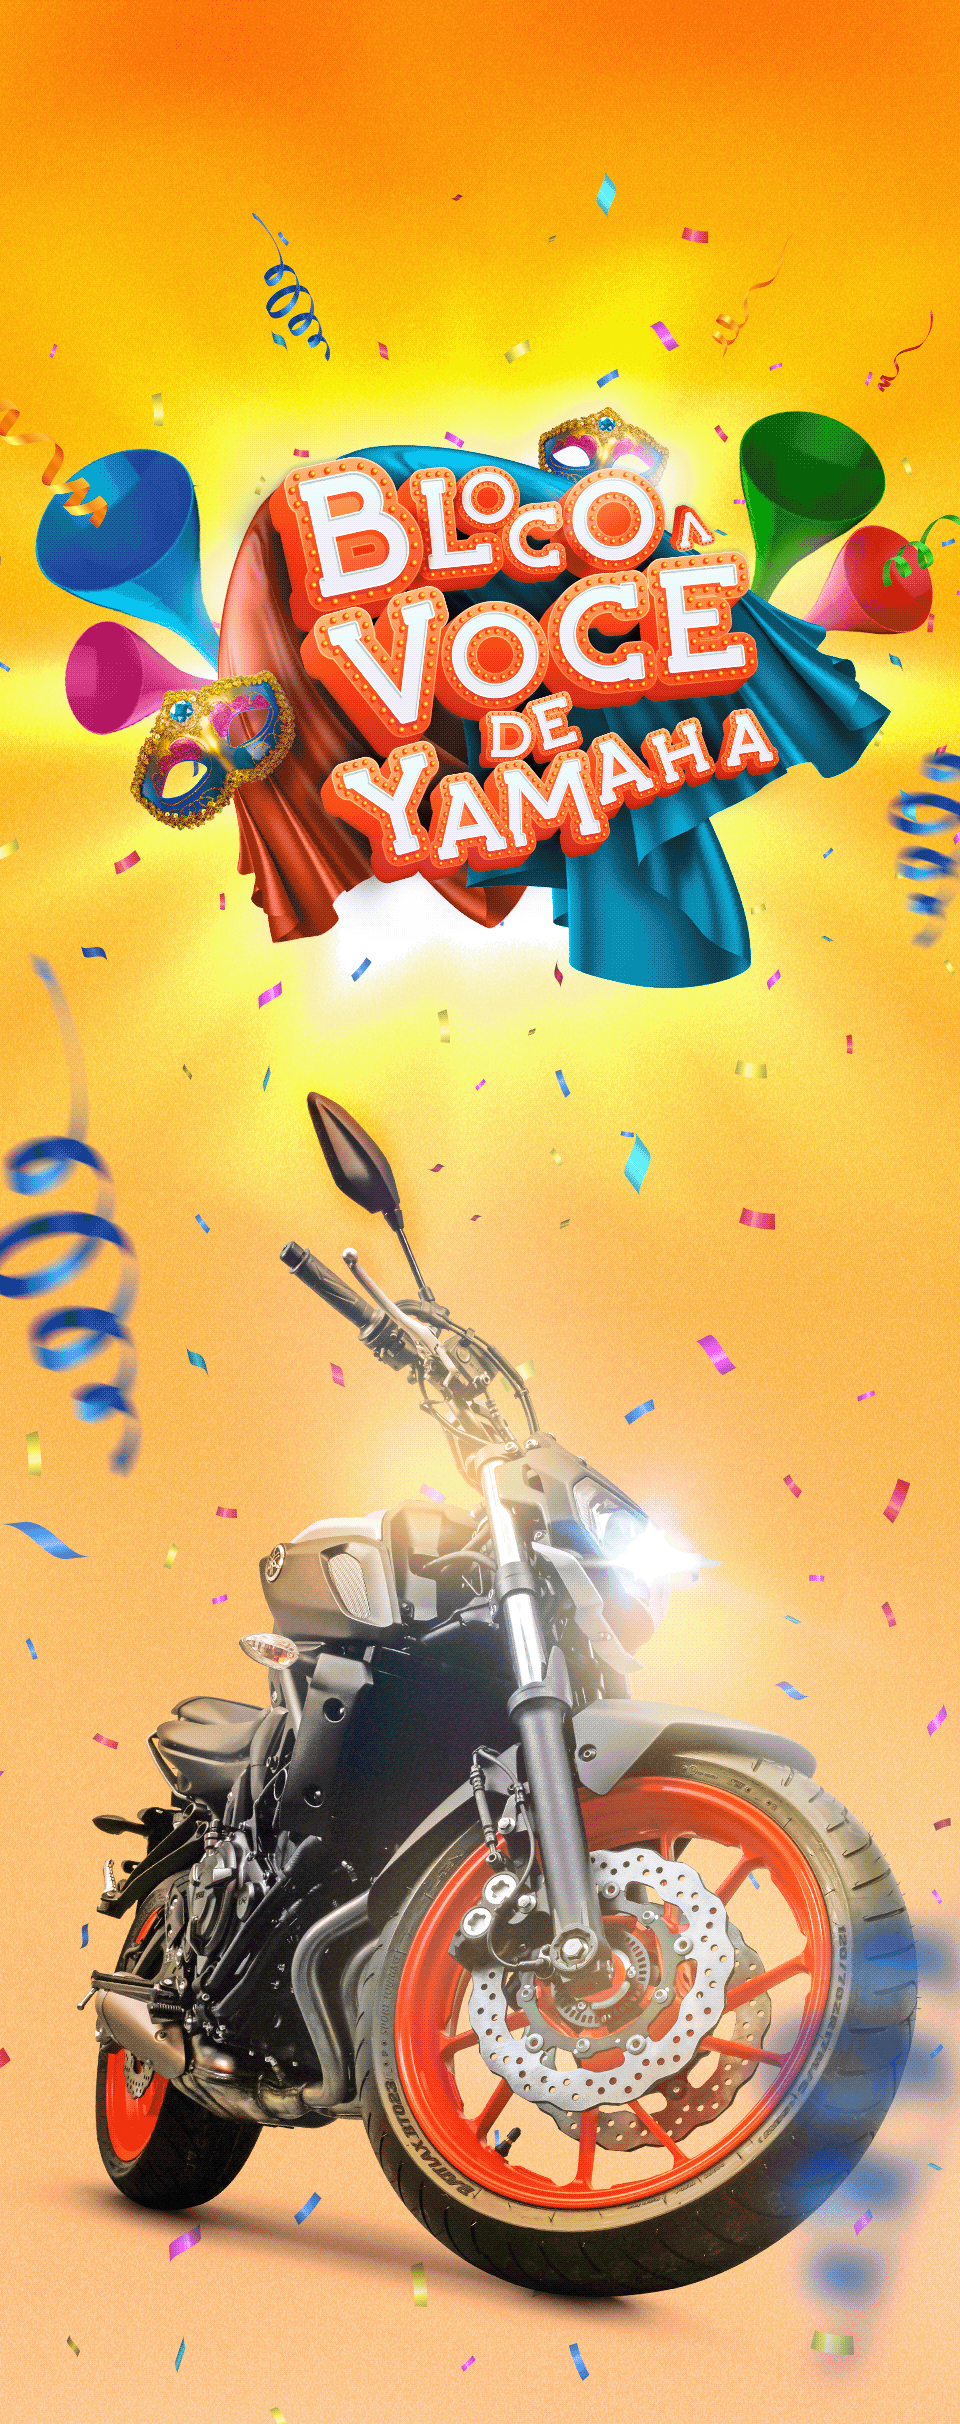 moto Carnaval digital kv Braga Motos yamaha design Direção de arte Publicidaade